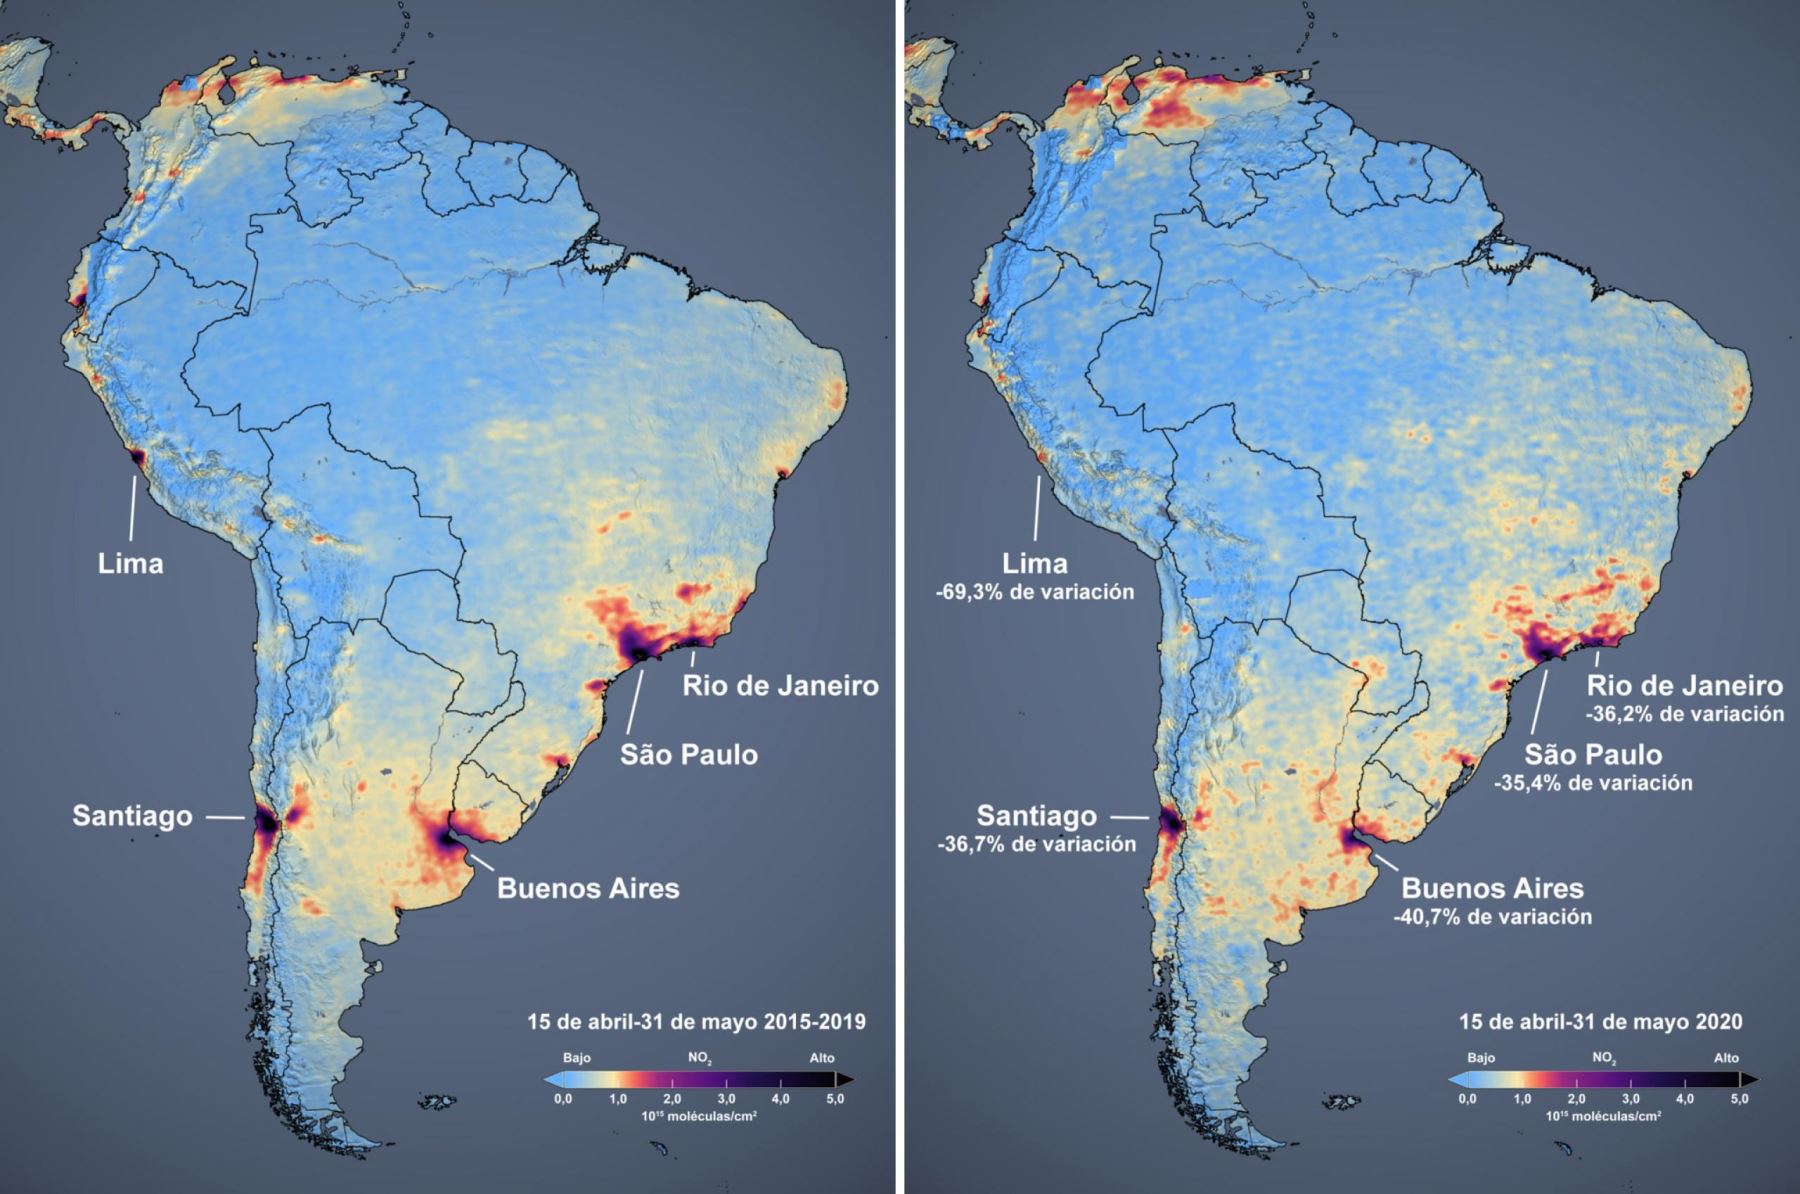 La NASA  publicó imágenes satelitales muestran una disminución notable de la contaminación del aire en Lima durante la cuarentena